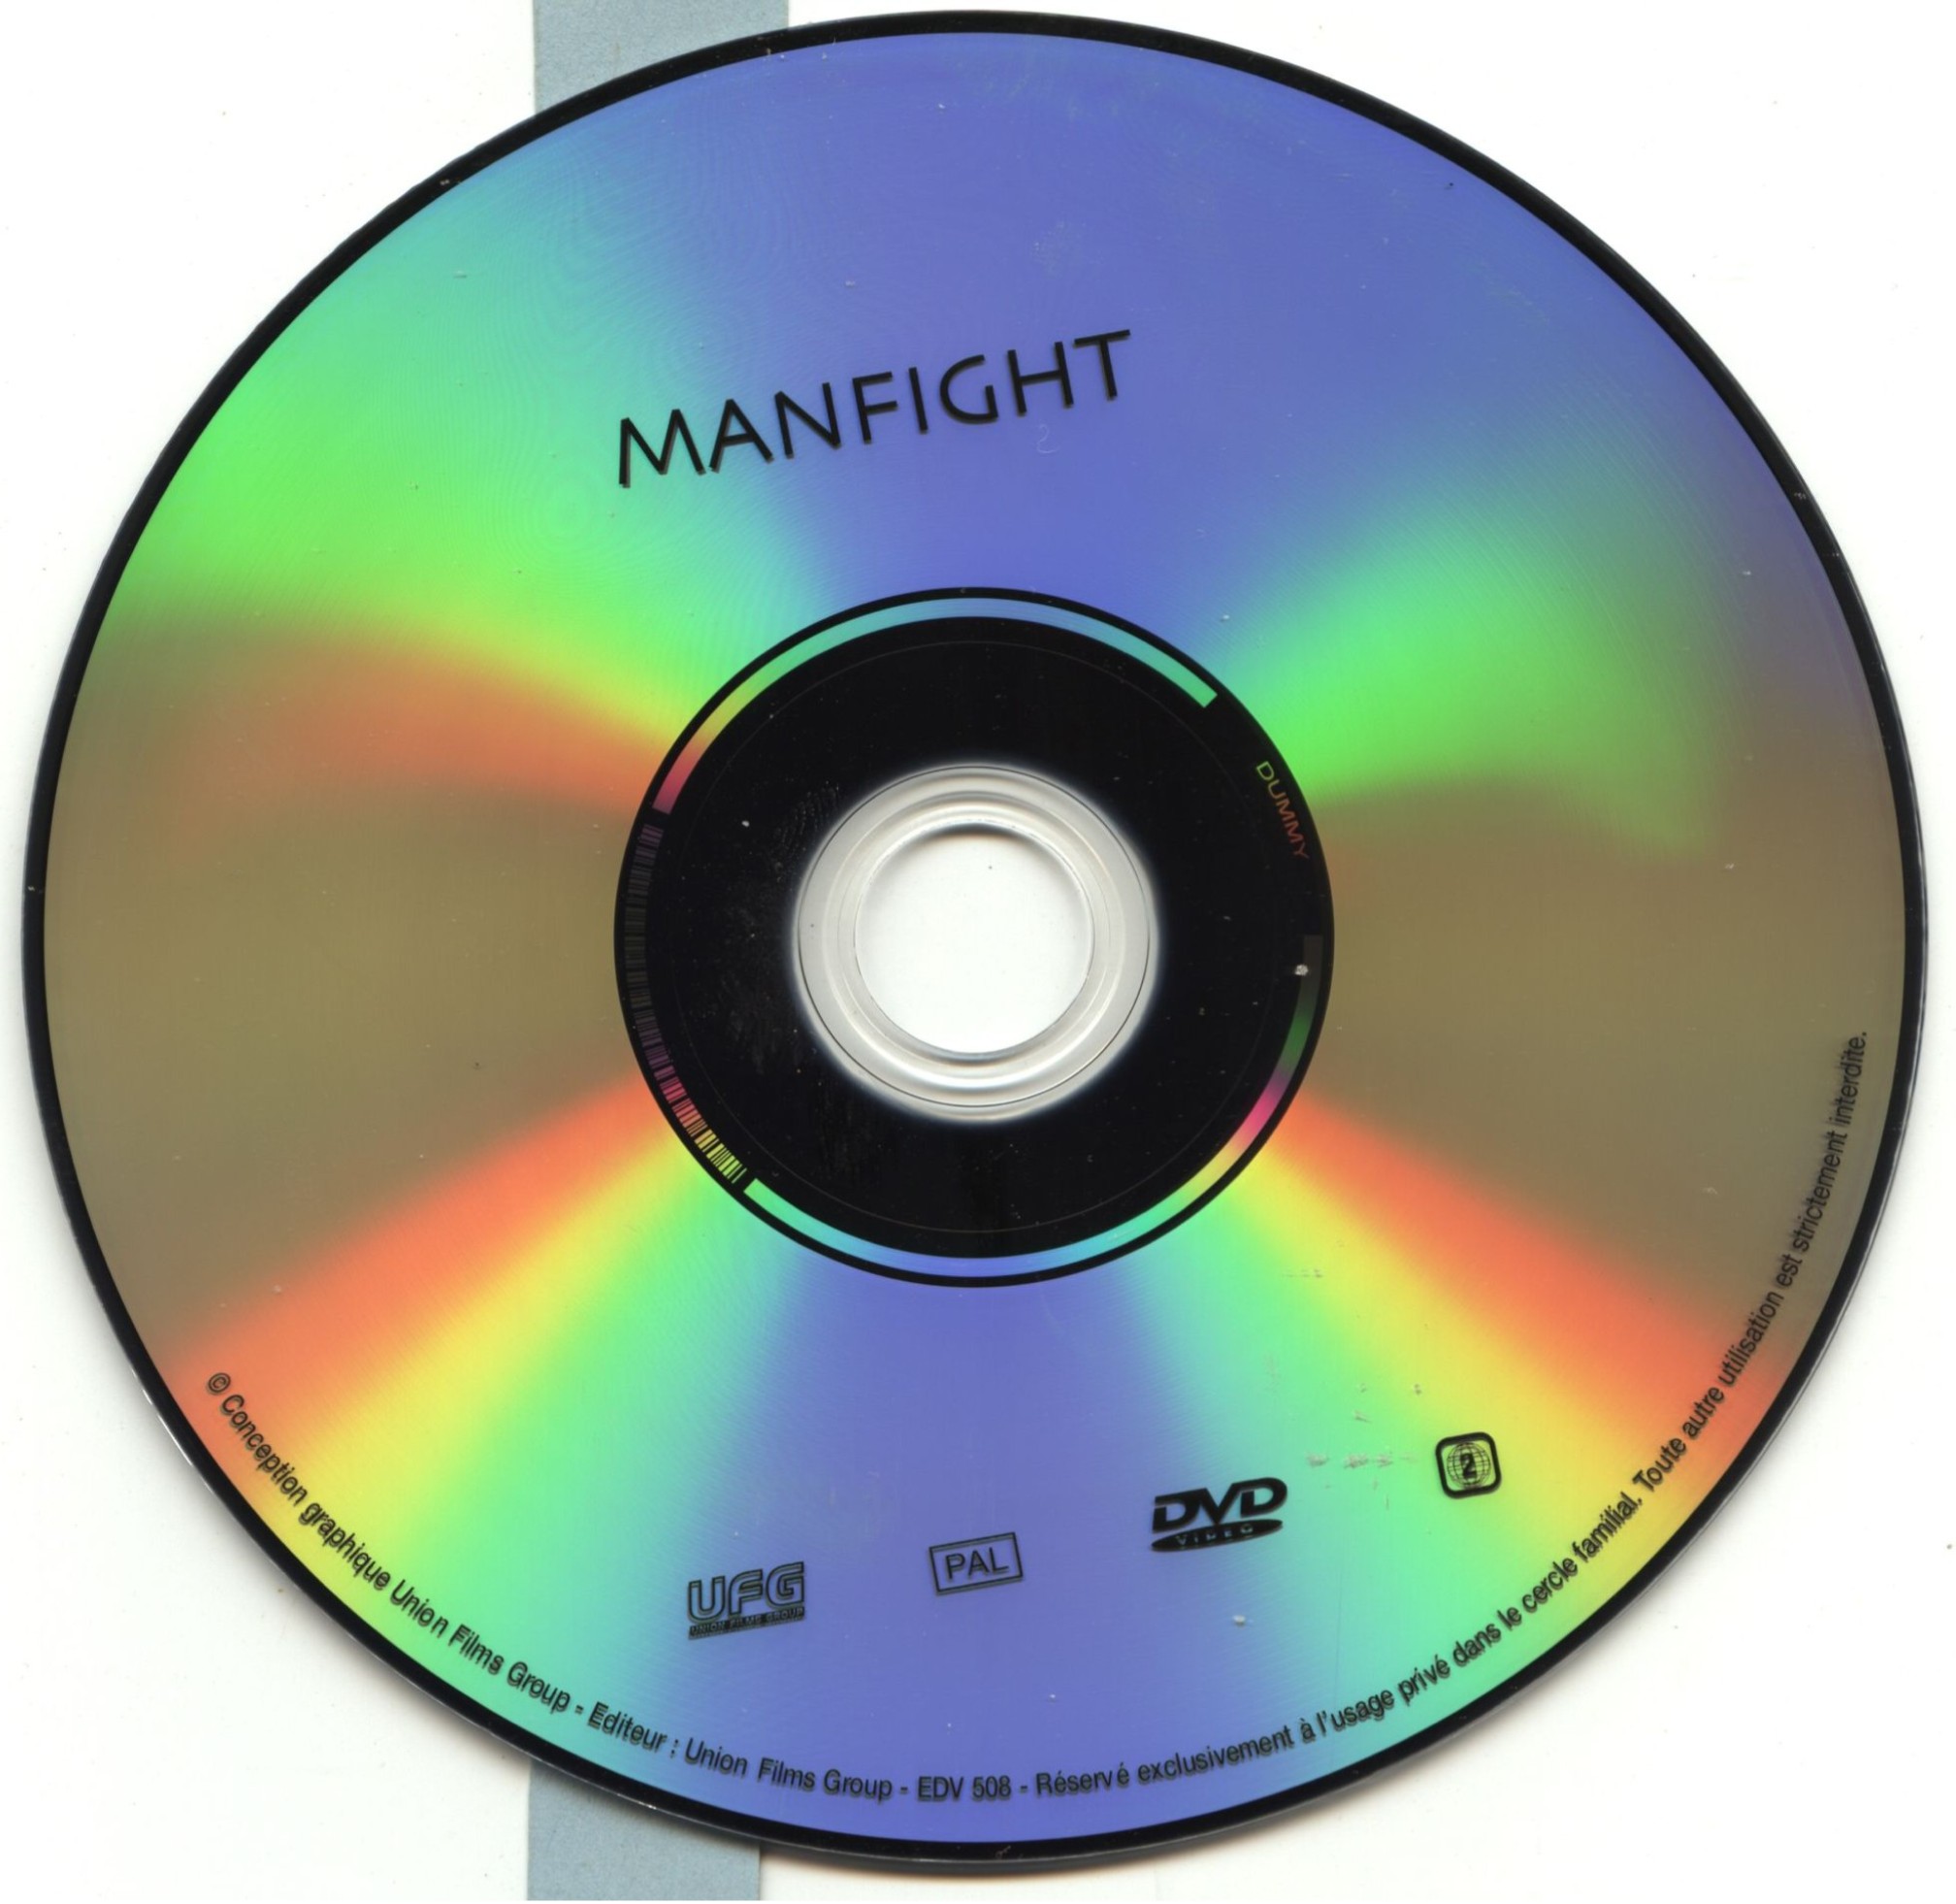 Man fight